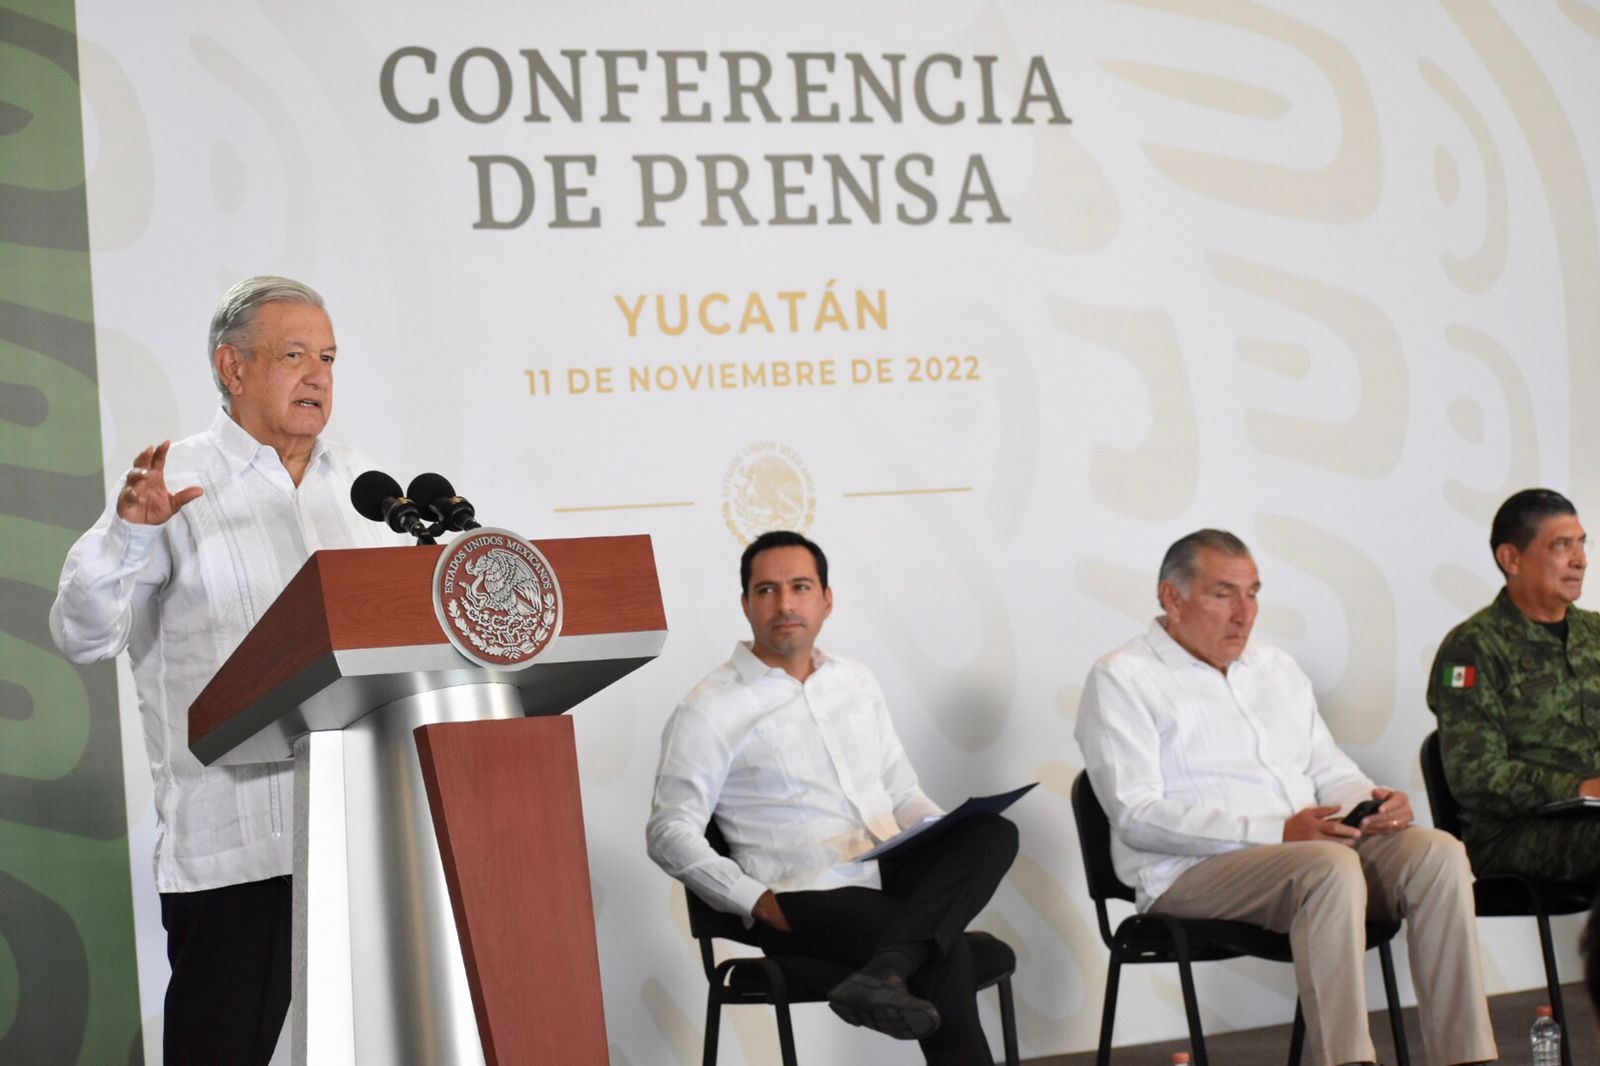 AMLO reitera reconocimiento a Por Esto! y a su Director Don Mario Renato Menéndez en su visita a Mérida